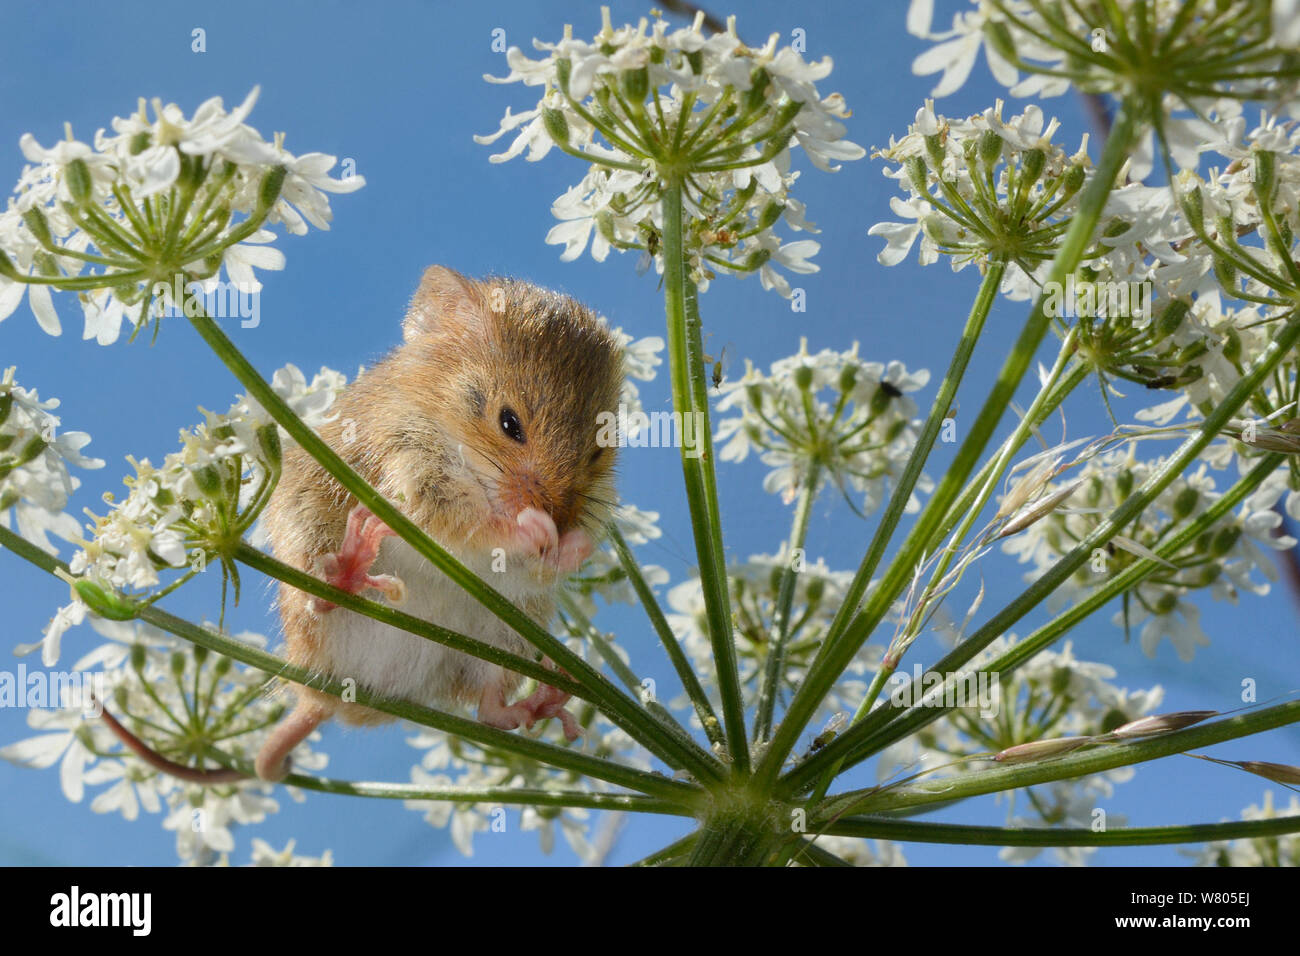 Micromys minutus (souris) Nettoyage de nez sur les berce du Caucase (Heracleum sphondylium) flowerhead après la libération, Moulton, Northampton, Royaume-Uni, juin. Parution du modèle. Banque D'Images